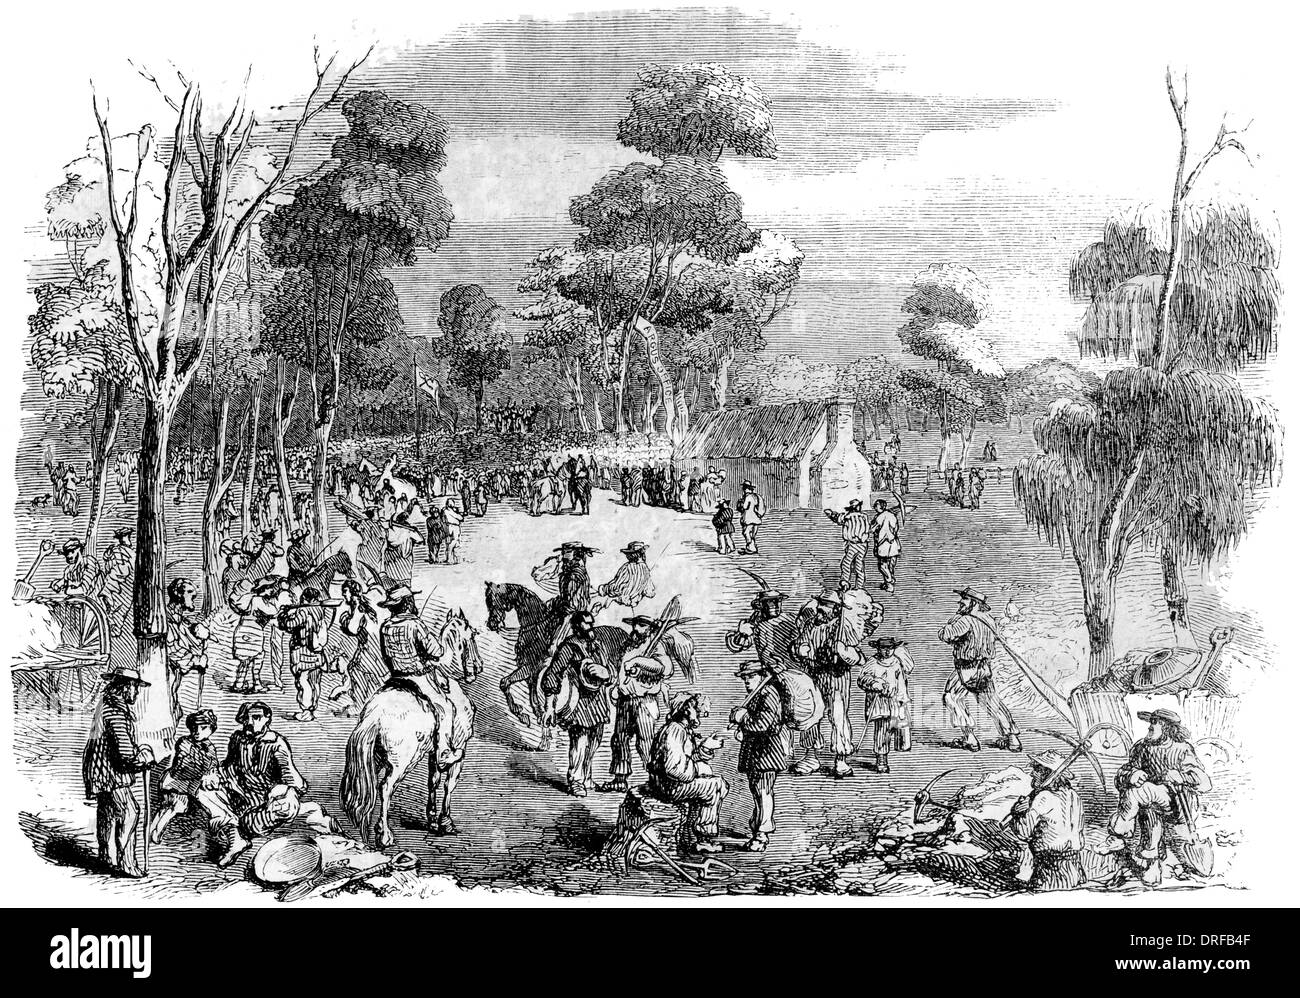 L'Australie. Grande réunion de chercheurs d'or à Mount Alexander, Dec, 15, 1852 Banque D'Images